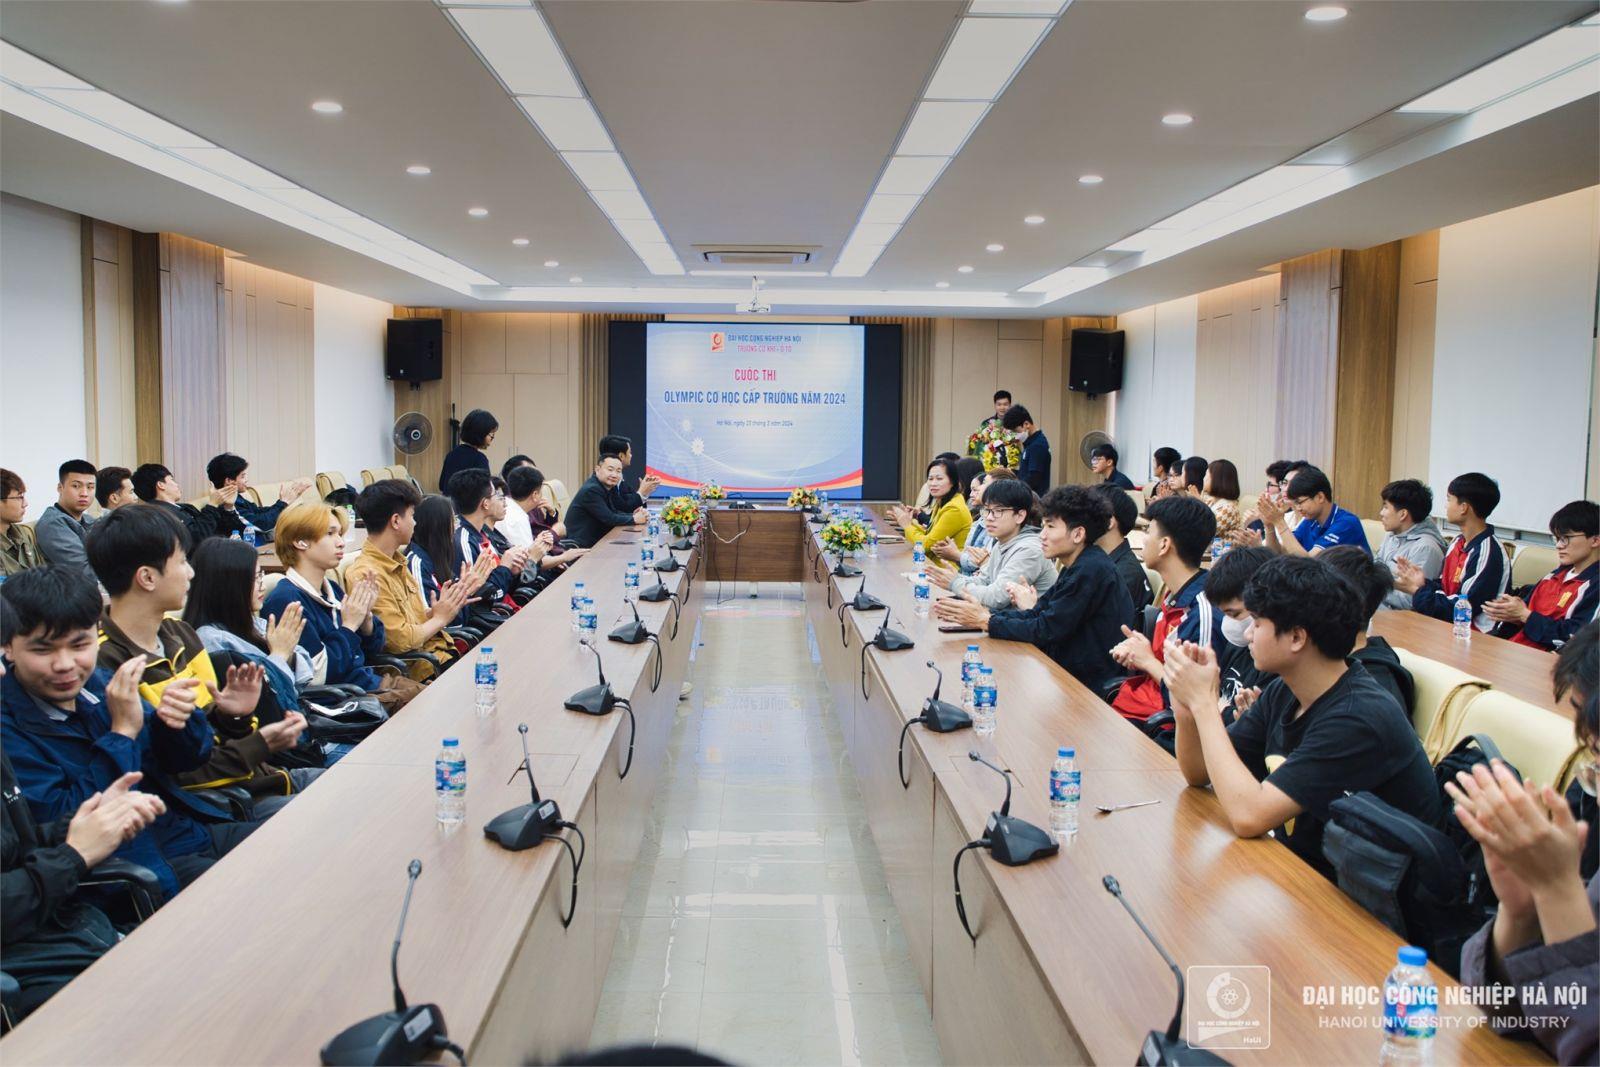 [moit] Đại học Công nghiệp Hà Nội tổ chức Cuộc thi Olympic Cơ học cấp trường năm 2024